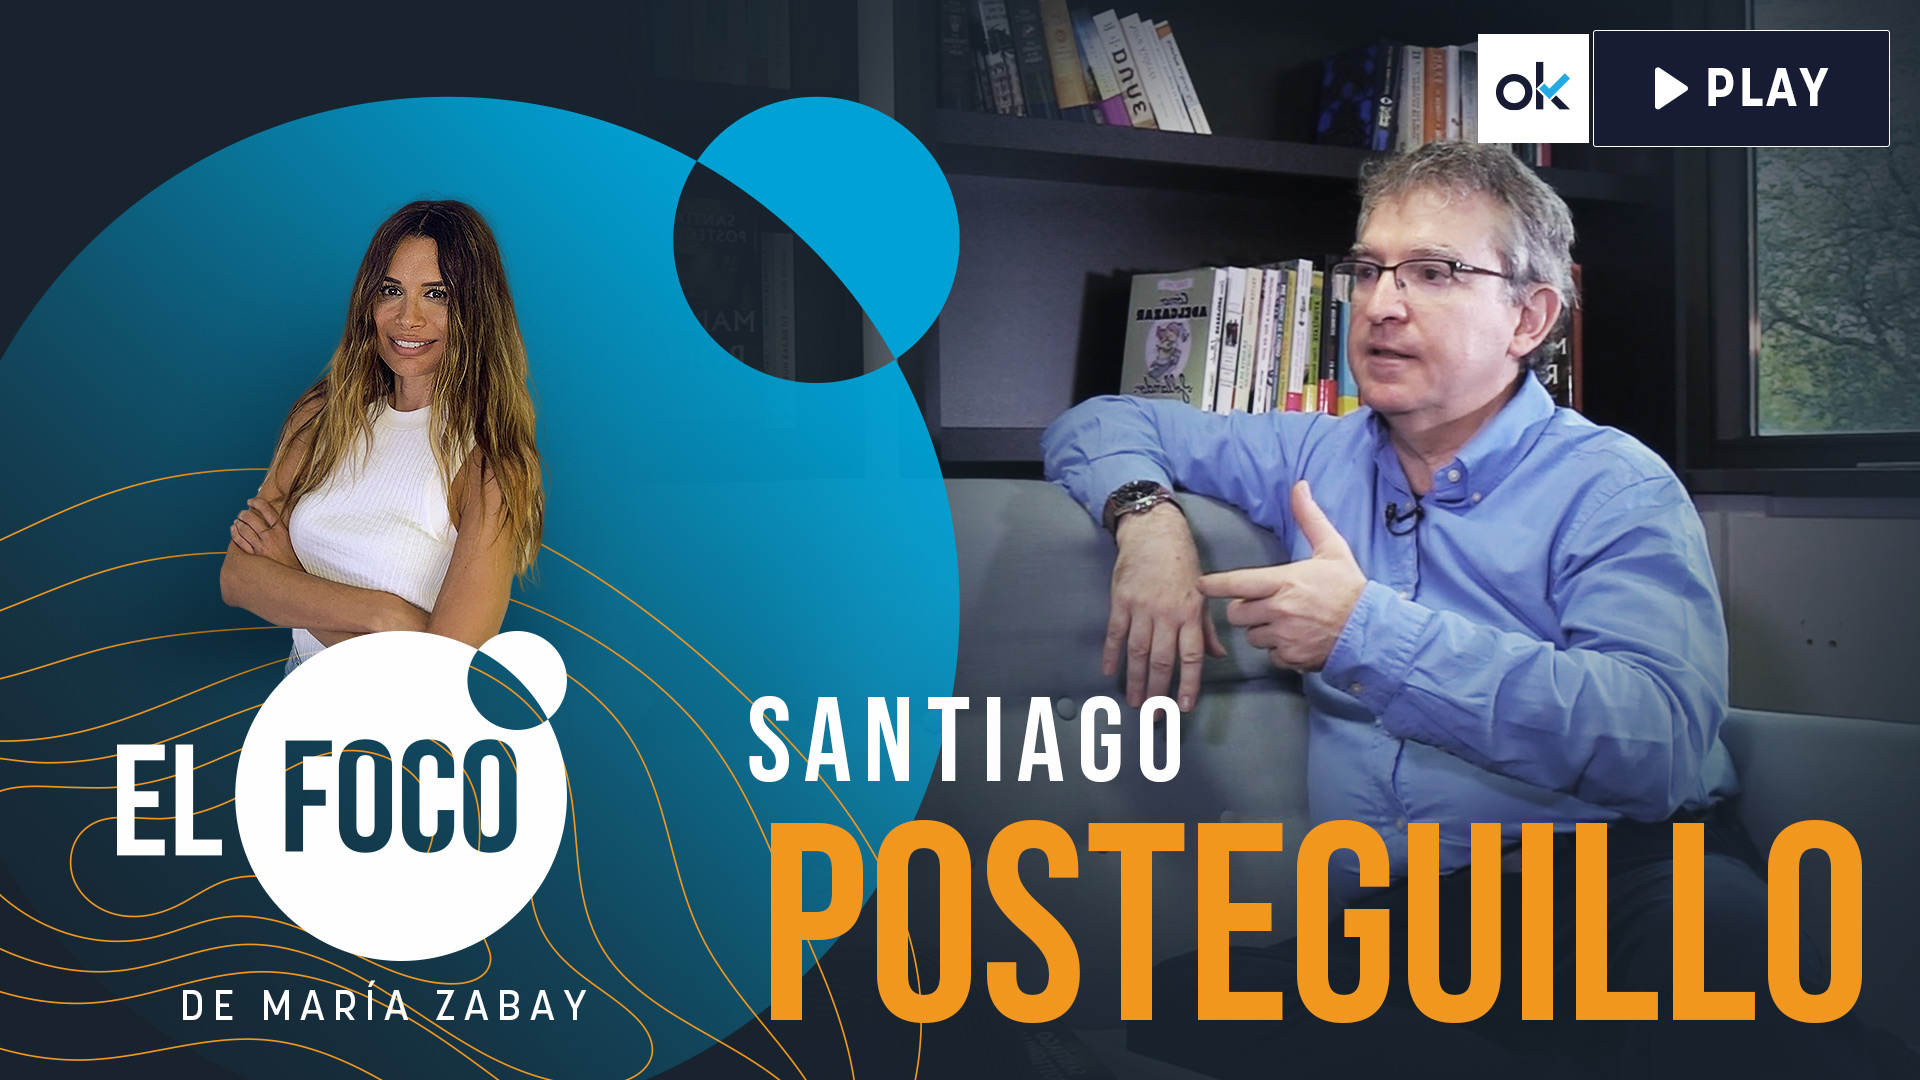 Santiago Posteguillo en ‘El Foco’ de María Zabay.